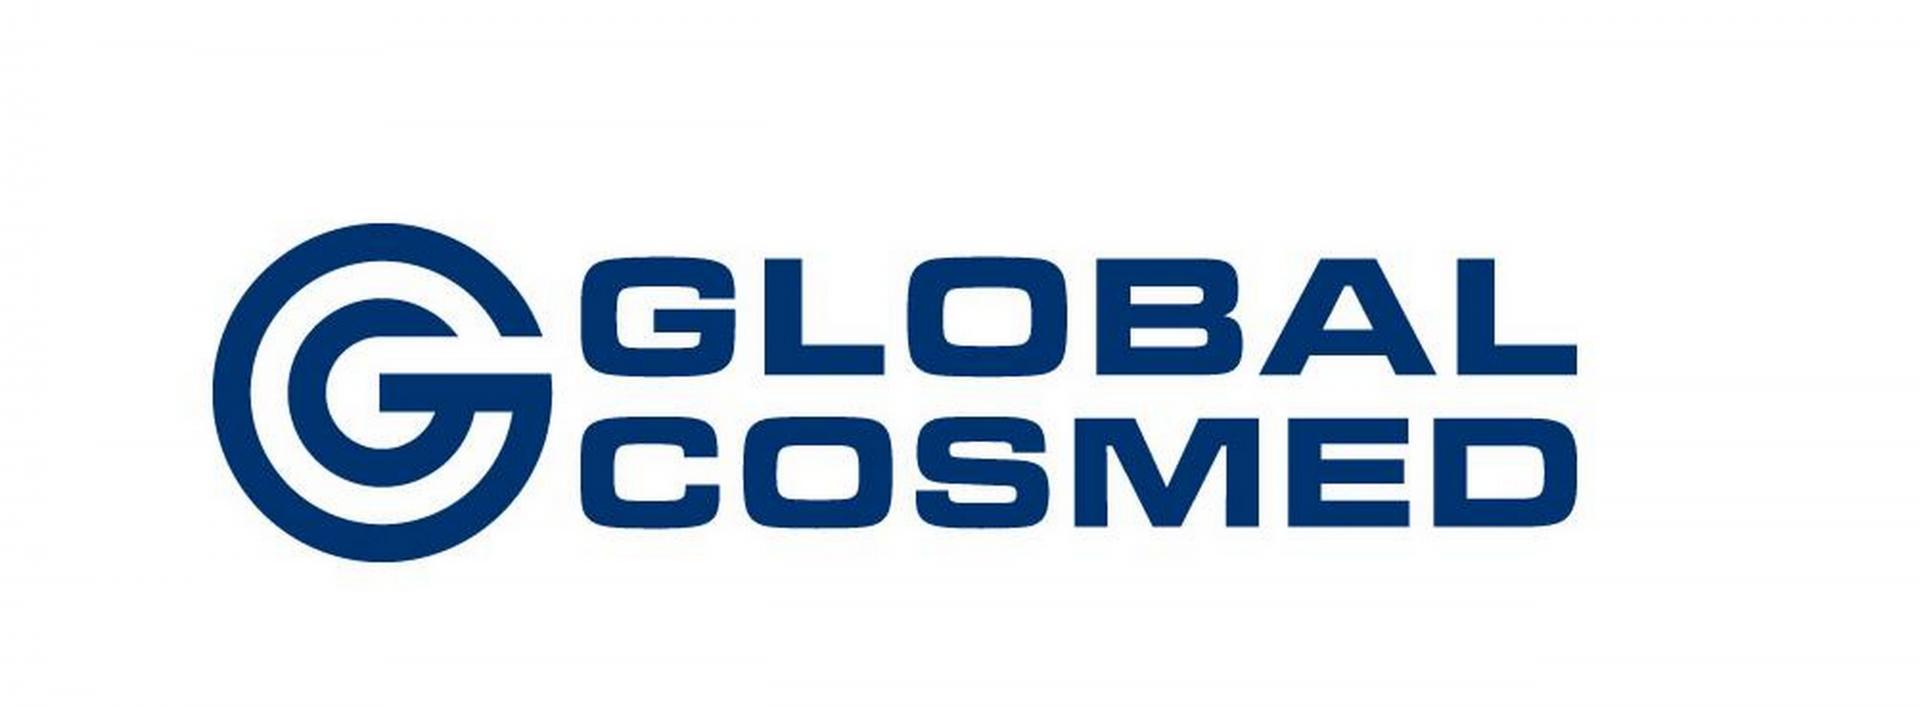 Global Cosmed – pracujemy normalnie